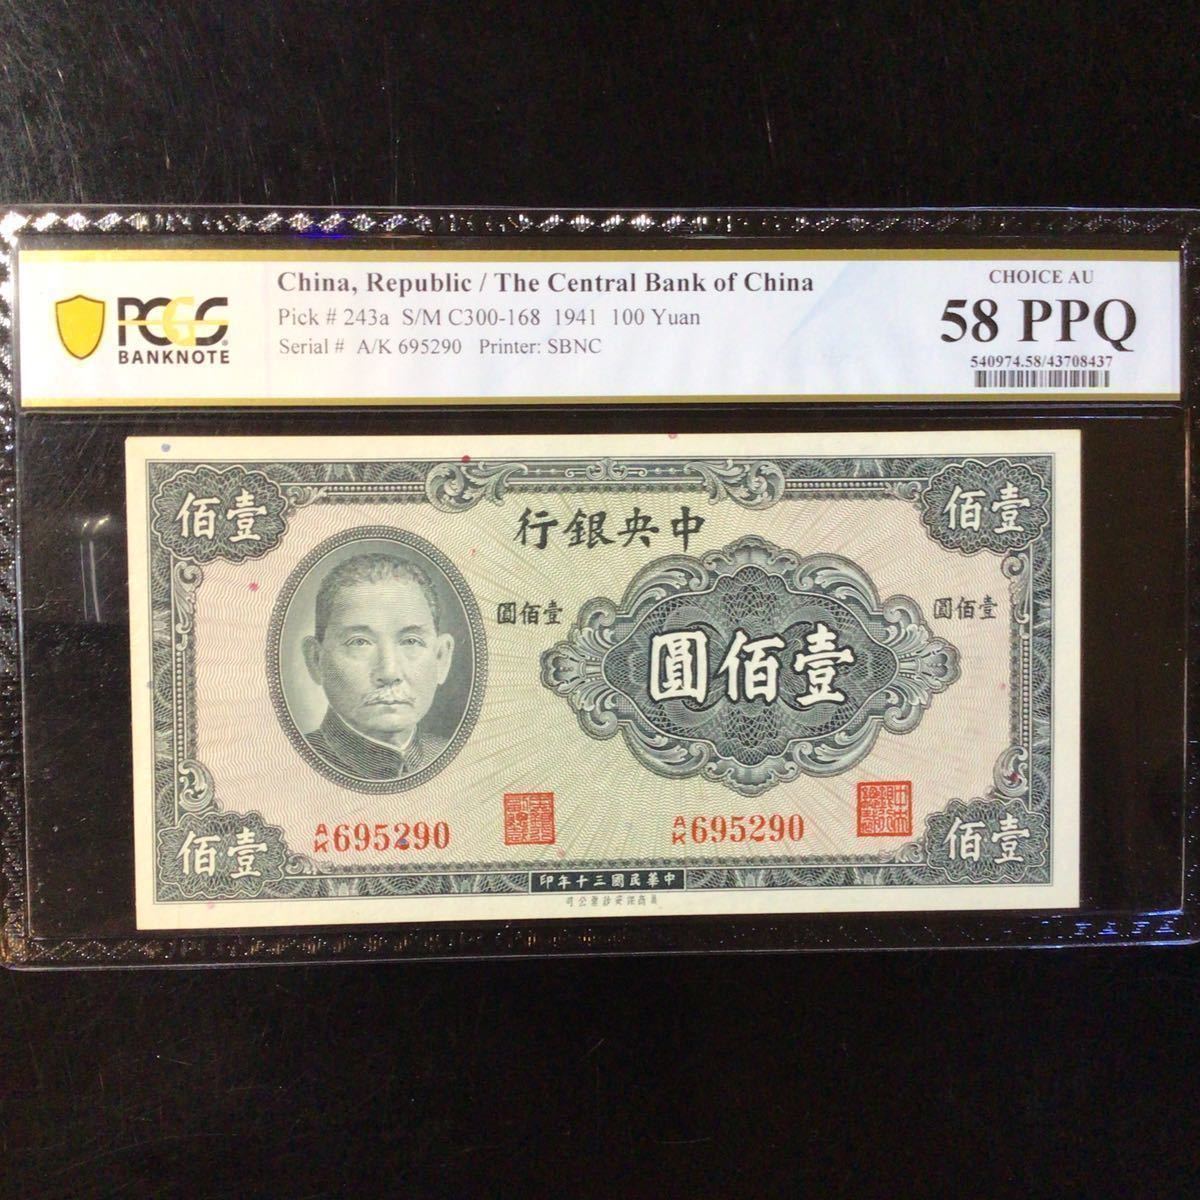 【お気に入り】 Central The CHINA《 Grading Banknote World Bank PPQ』 58 AU Choice Grading Yuan【1941】『PCGS 》100 China of 世界